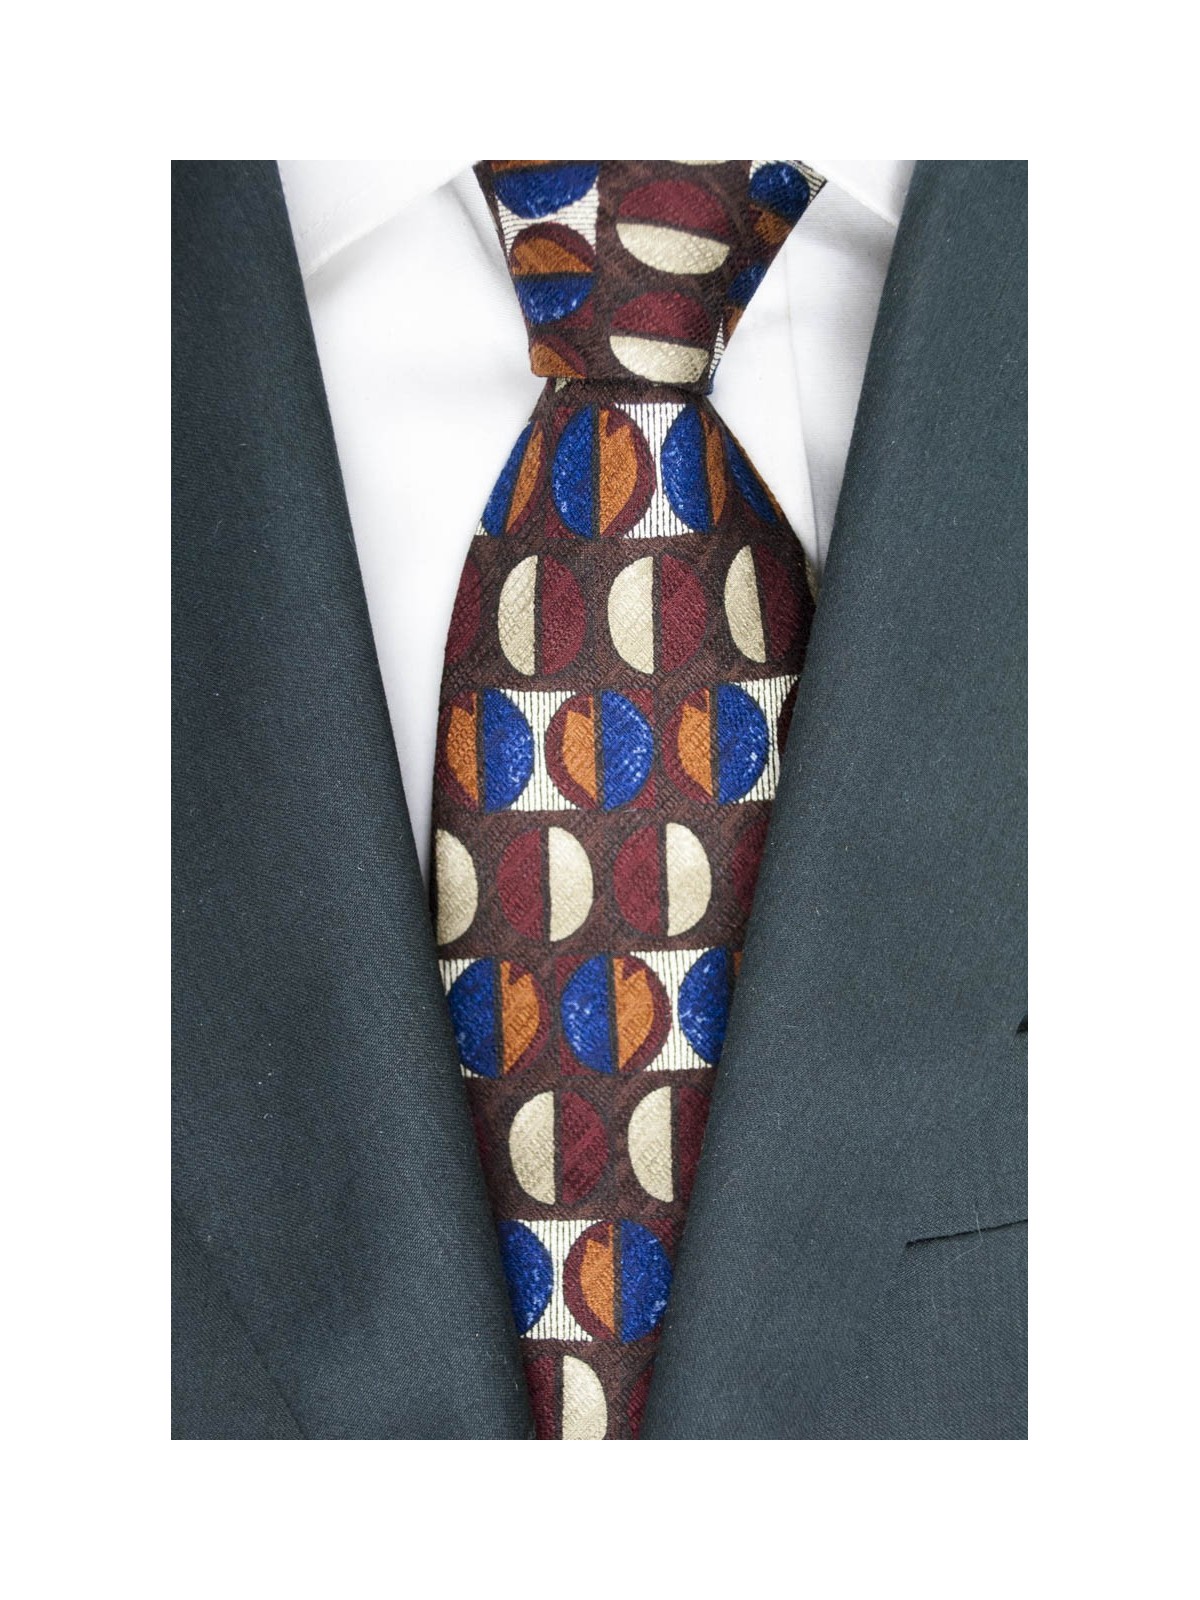 Braune Krawatte Geometrische Muster In Verschiedenen Farben - Basile - 100% Reine Seide